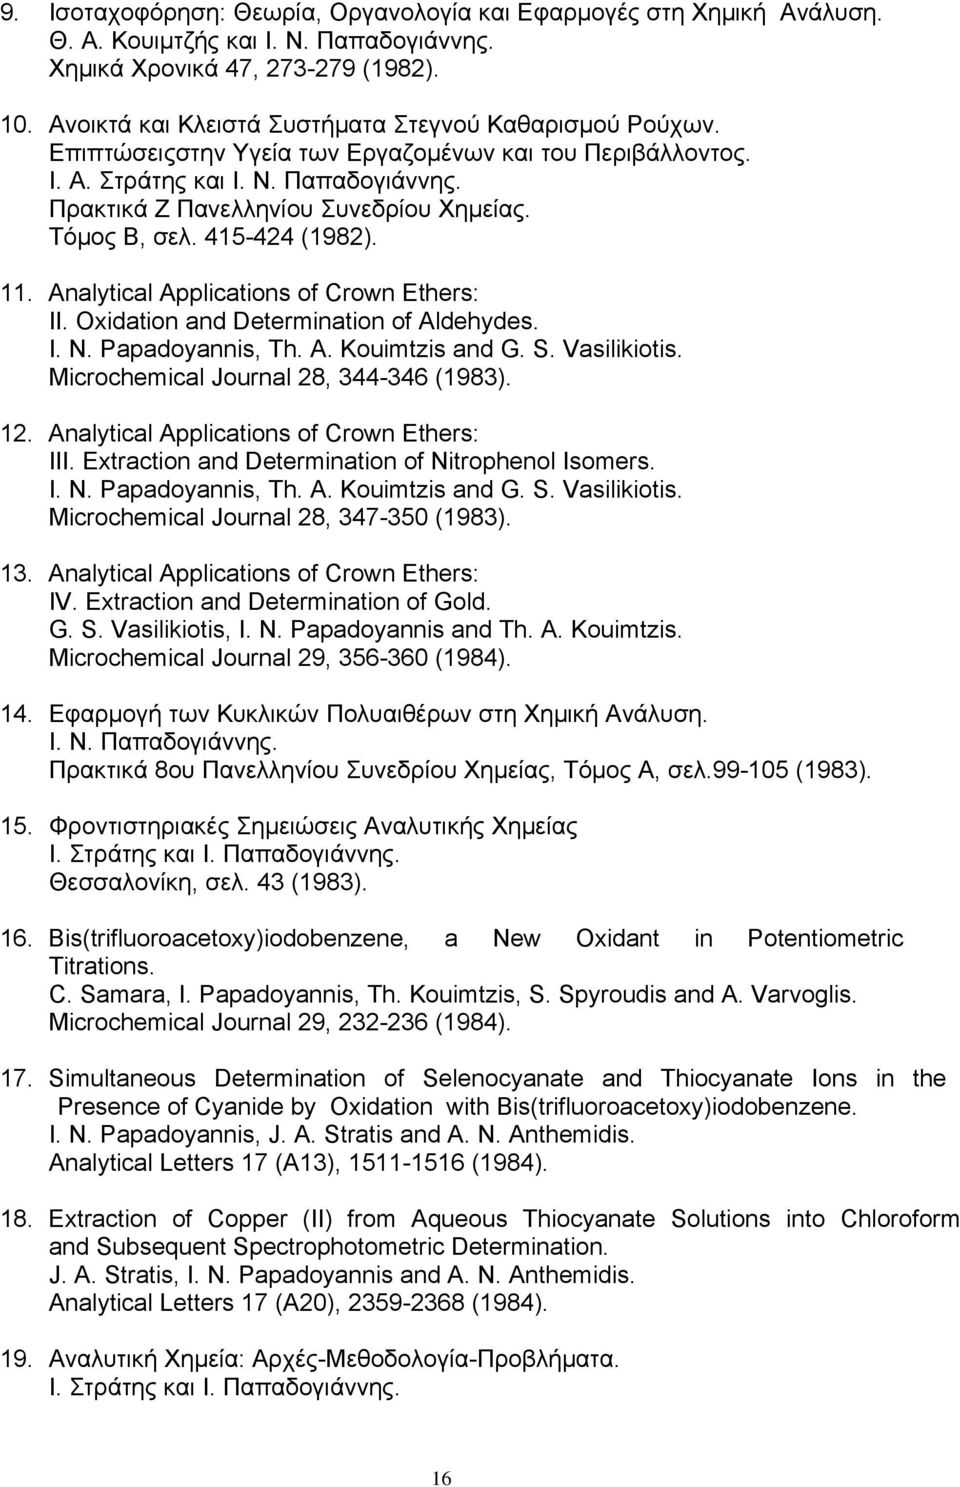 Τόμος Β, σελ. 415-424 (1982). 11. Analytical Applications of Crown Ethers: II. Oxidation and Determination of Aldehydes. I. N. Papadoyannis, Th. A. Kouimtzis and G. S. Vasilikiotis.